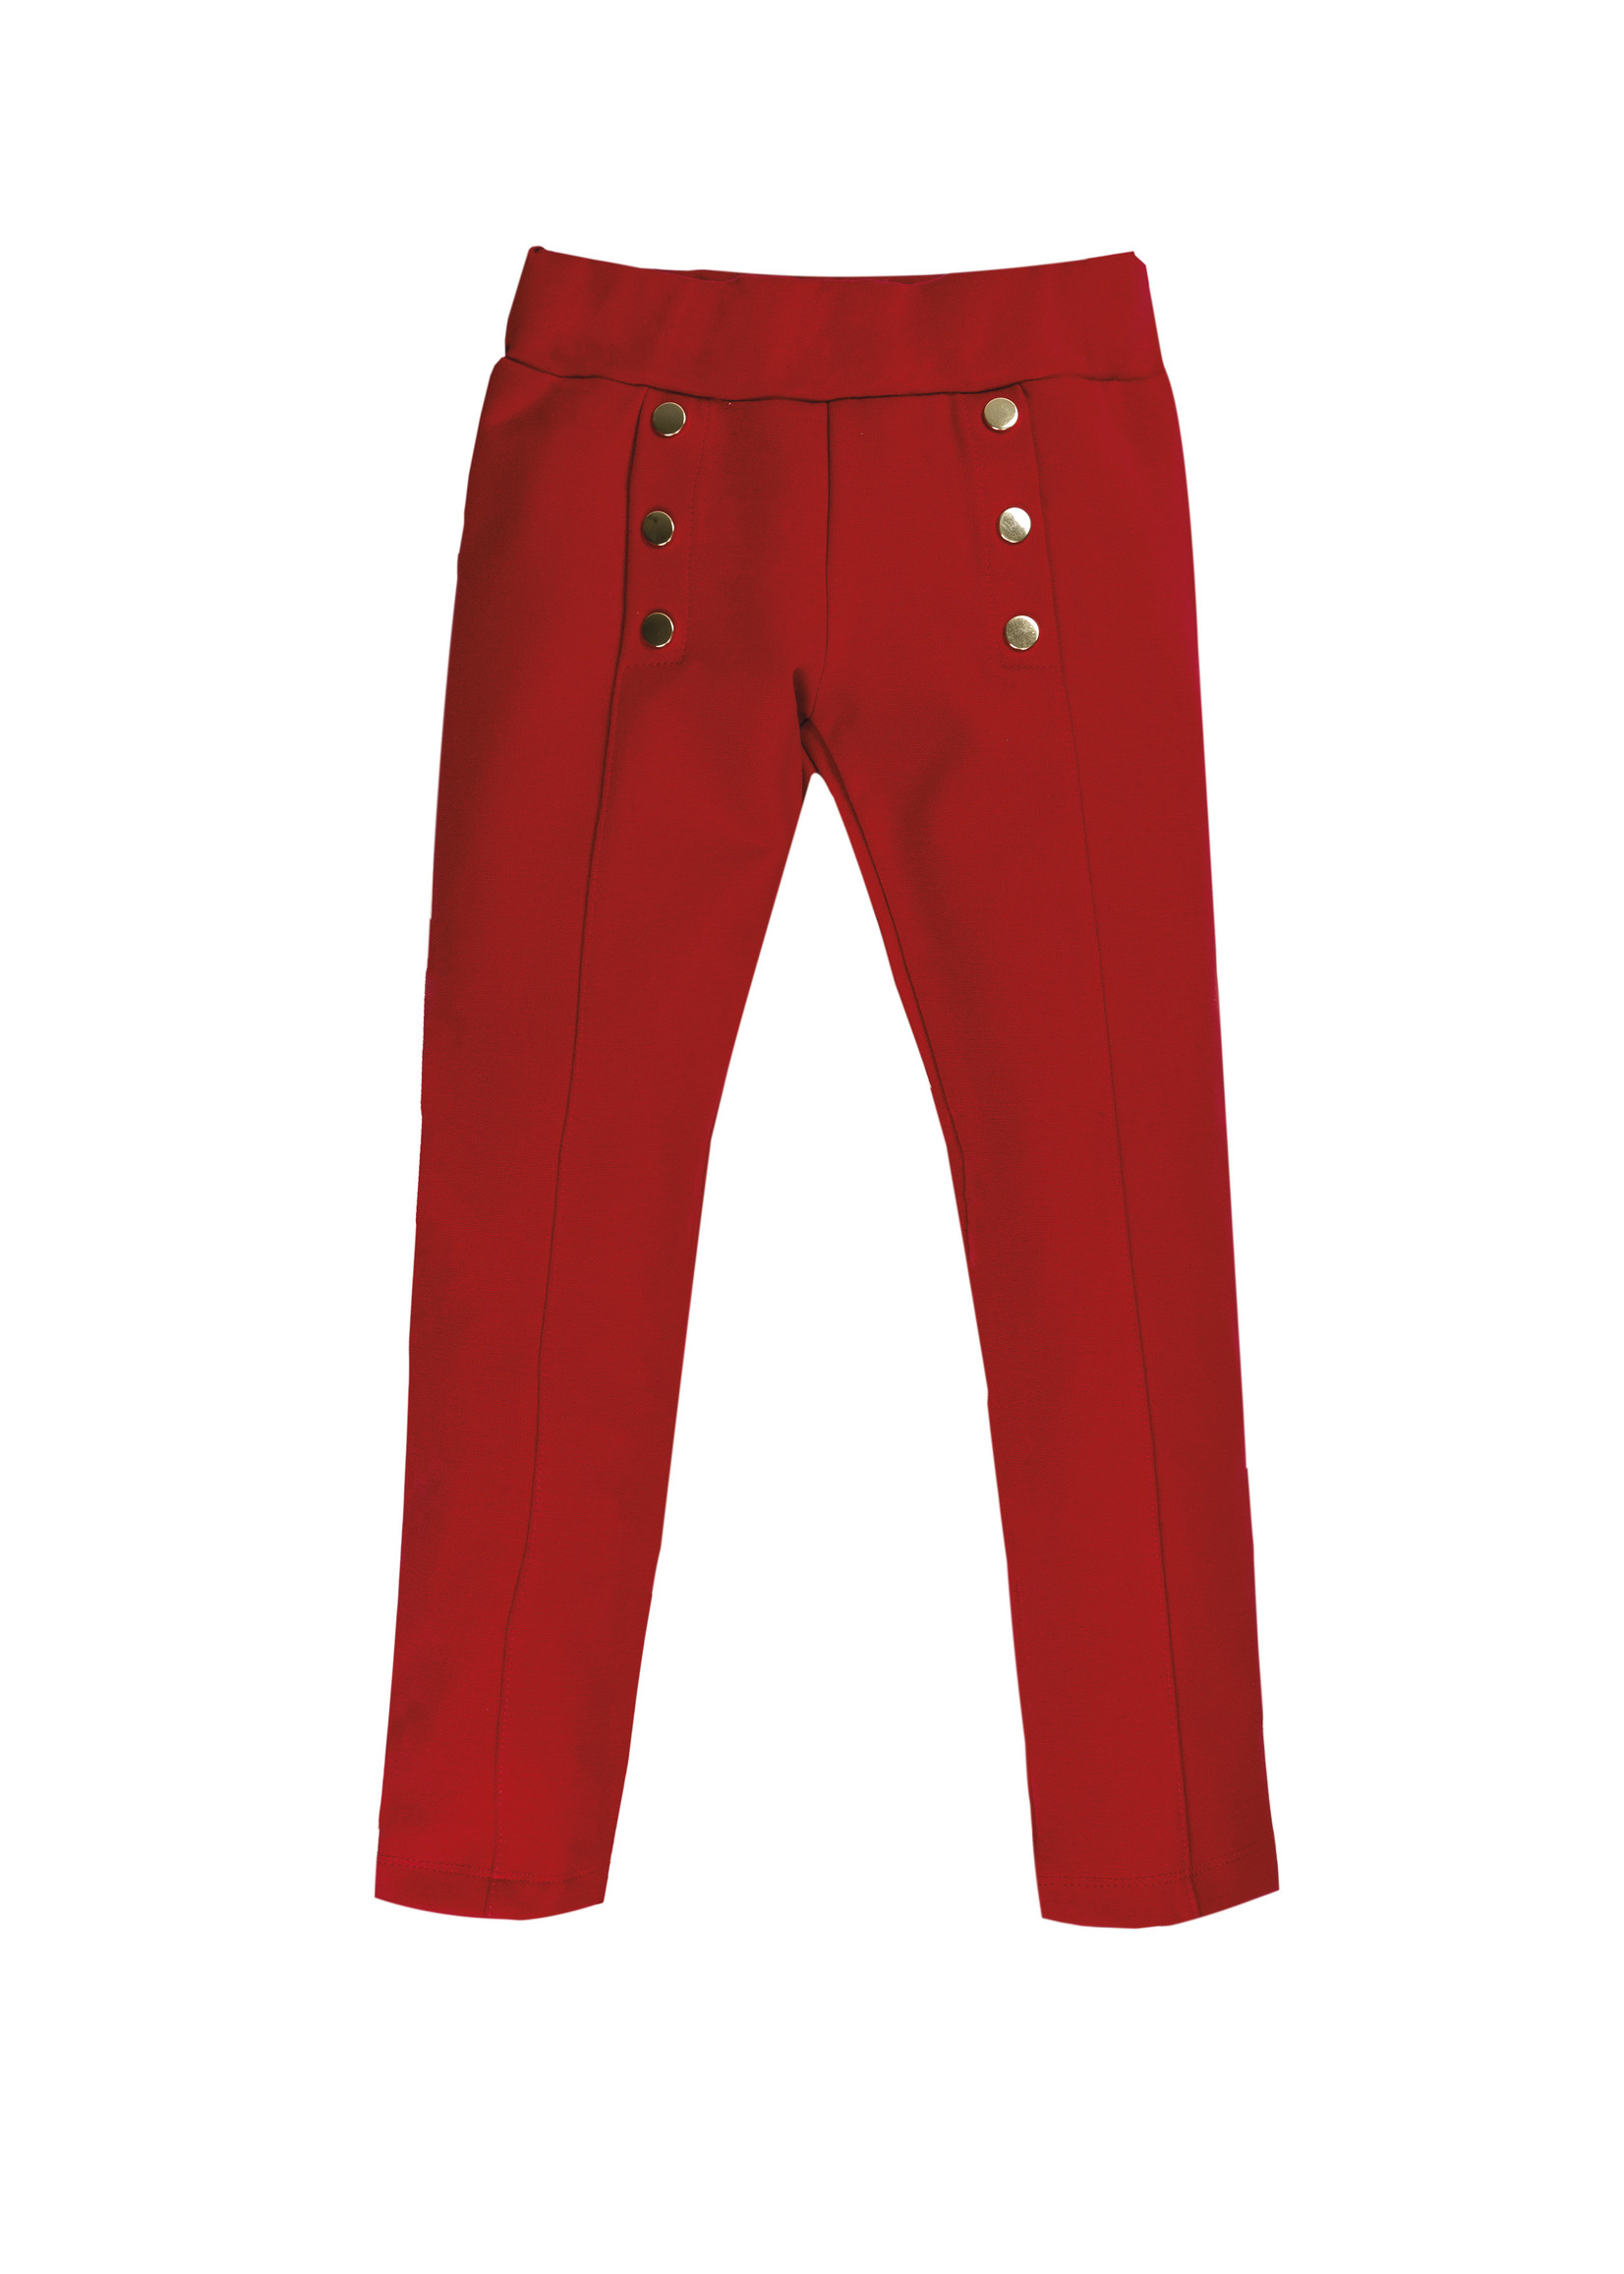 EMC EMC stitch trousers red